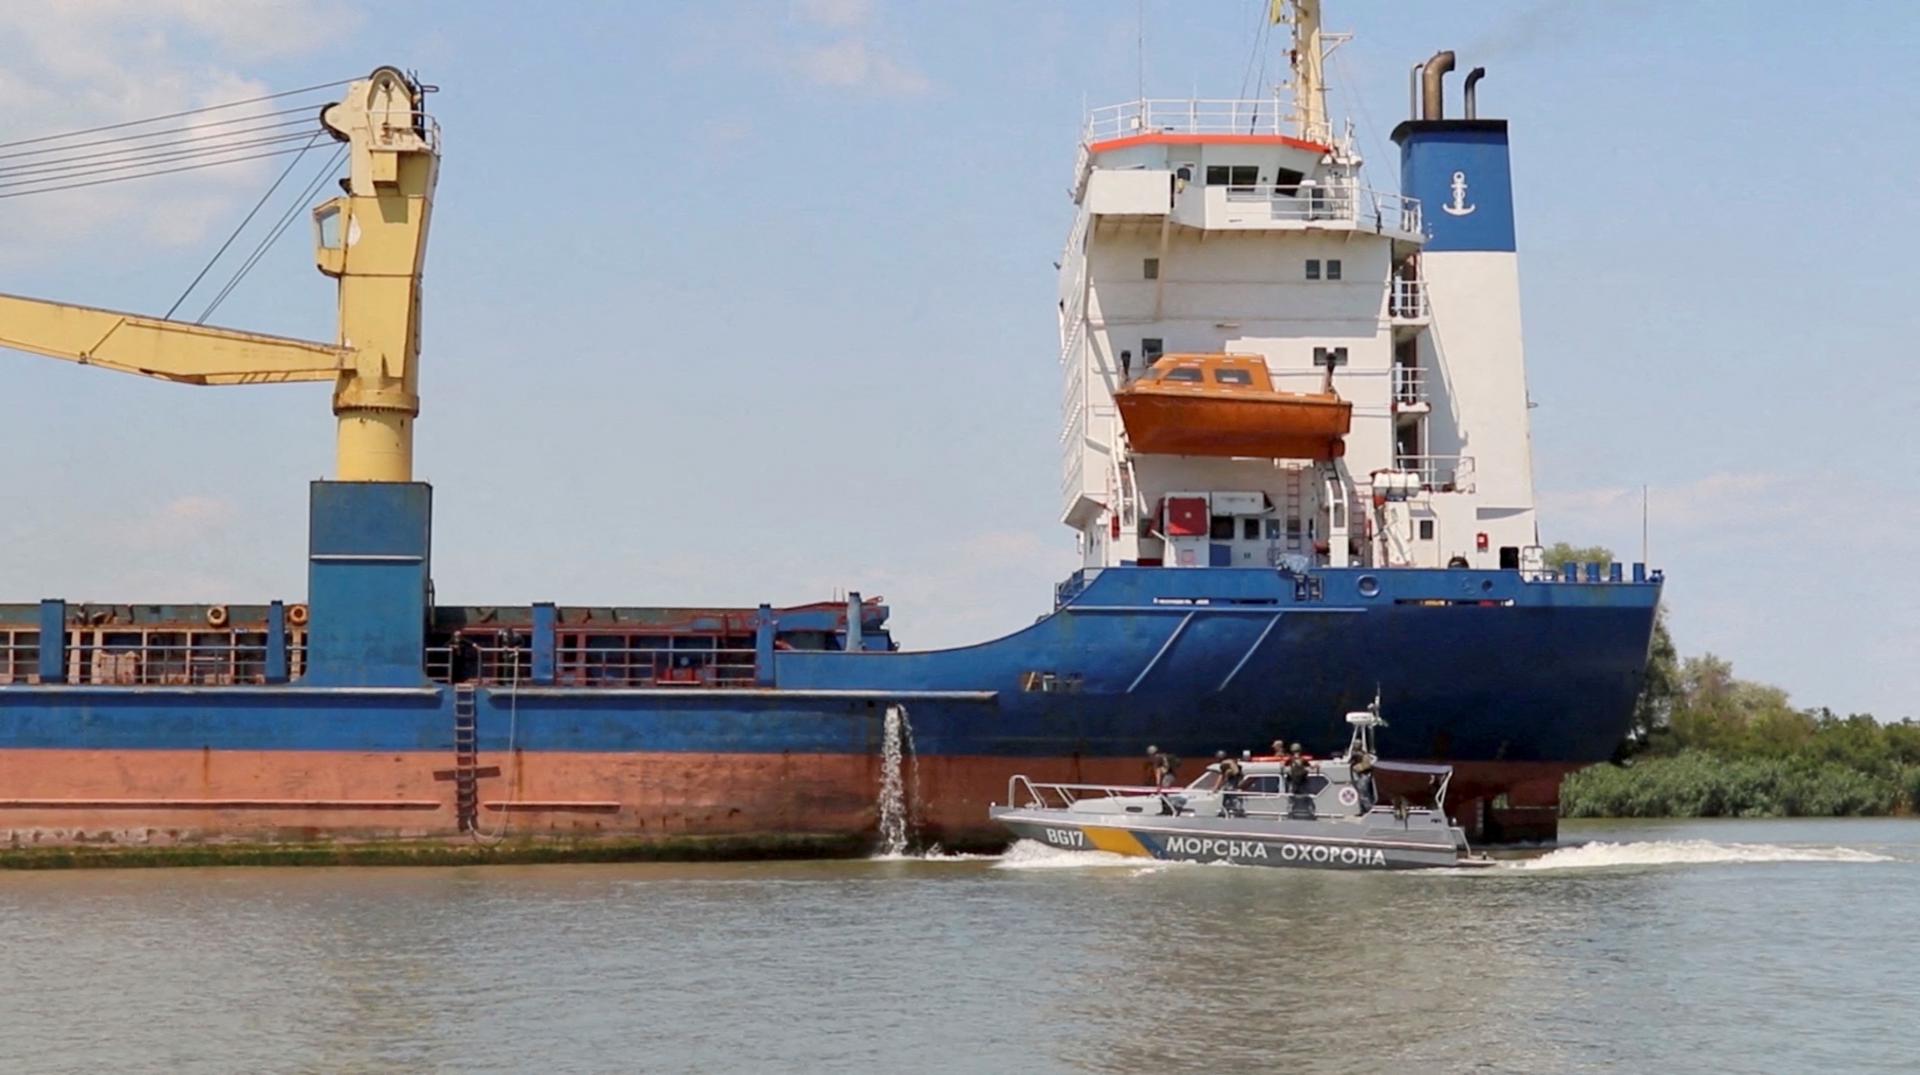 Ukrajinský prístav na Dunaji po ruských útokoch prerušil prevádzku, desiatky lodí čakajú